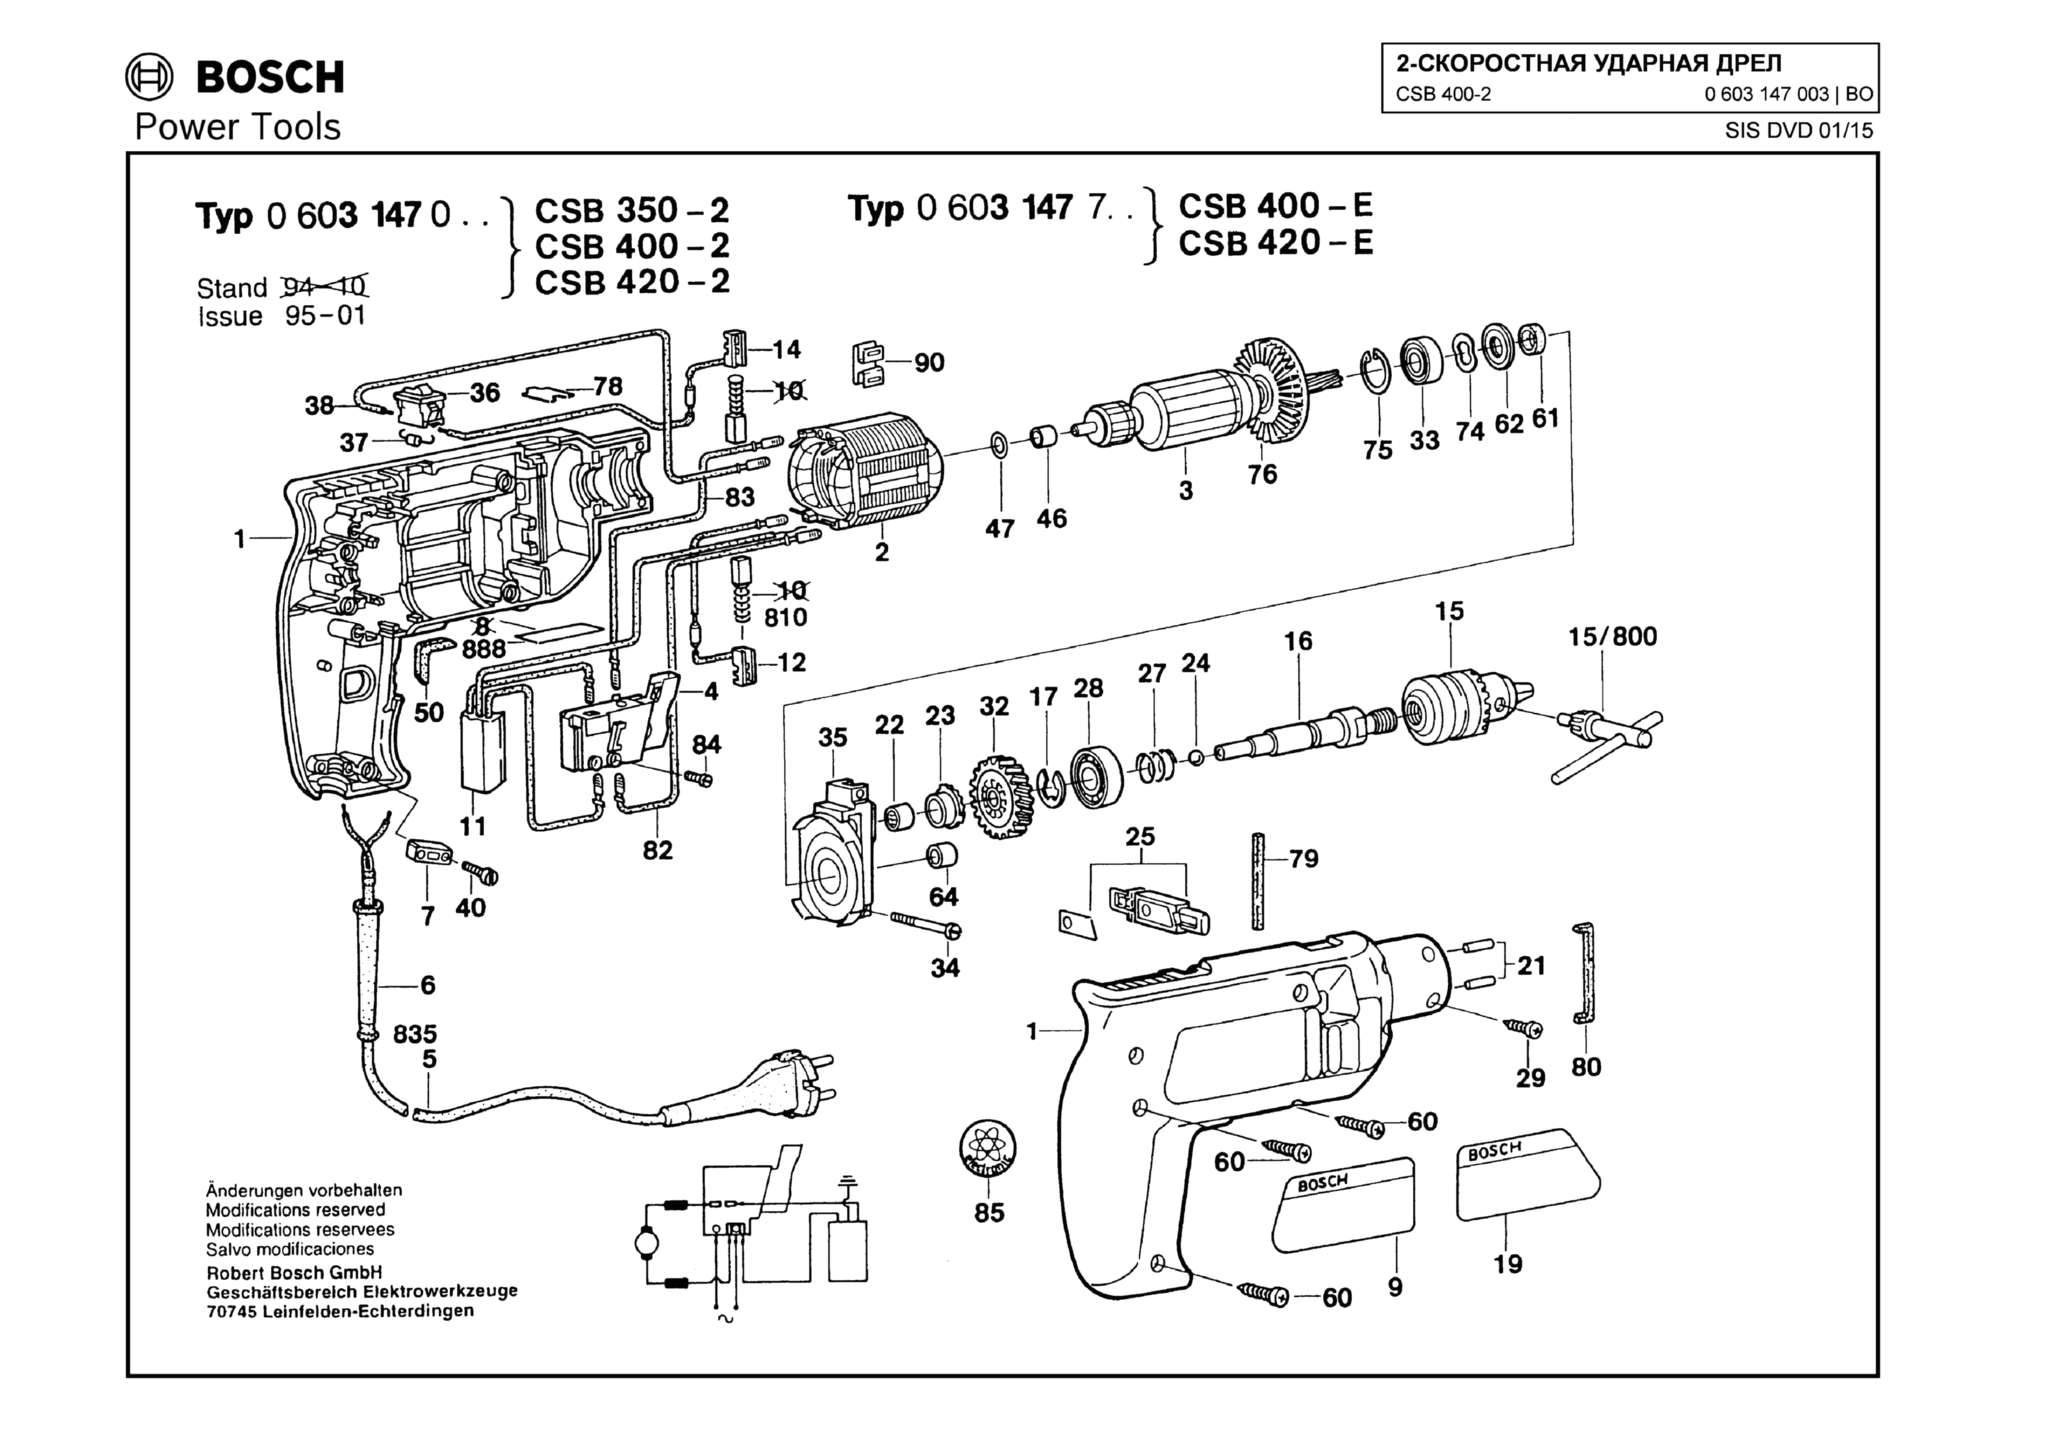 Запчасти, схема и деталировка Bosch CSB 400-2 (ТИП 0603147003)